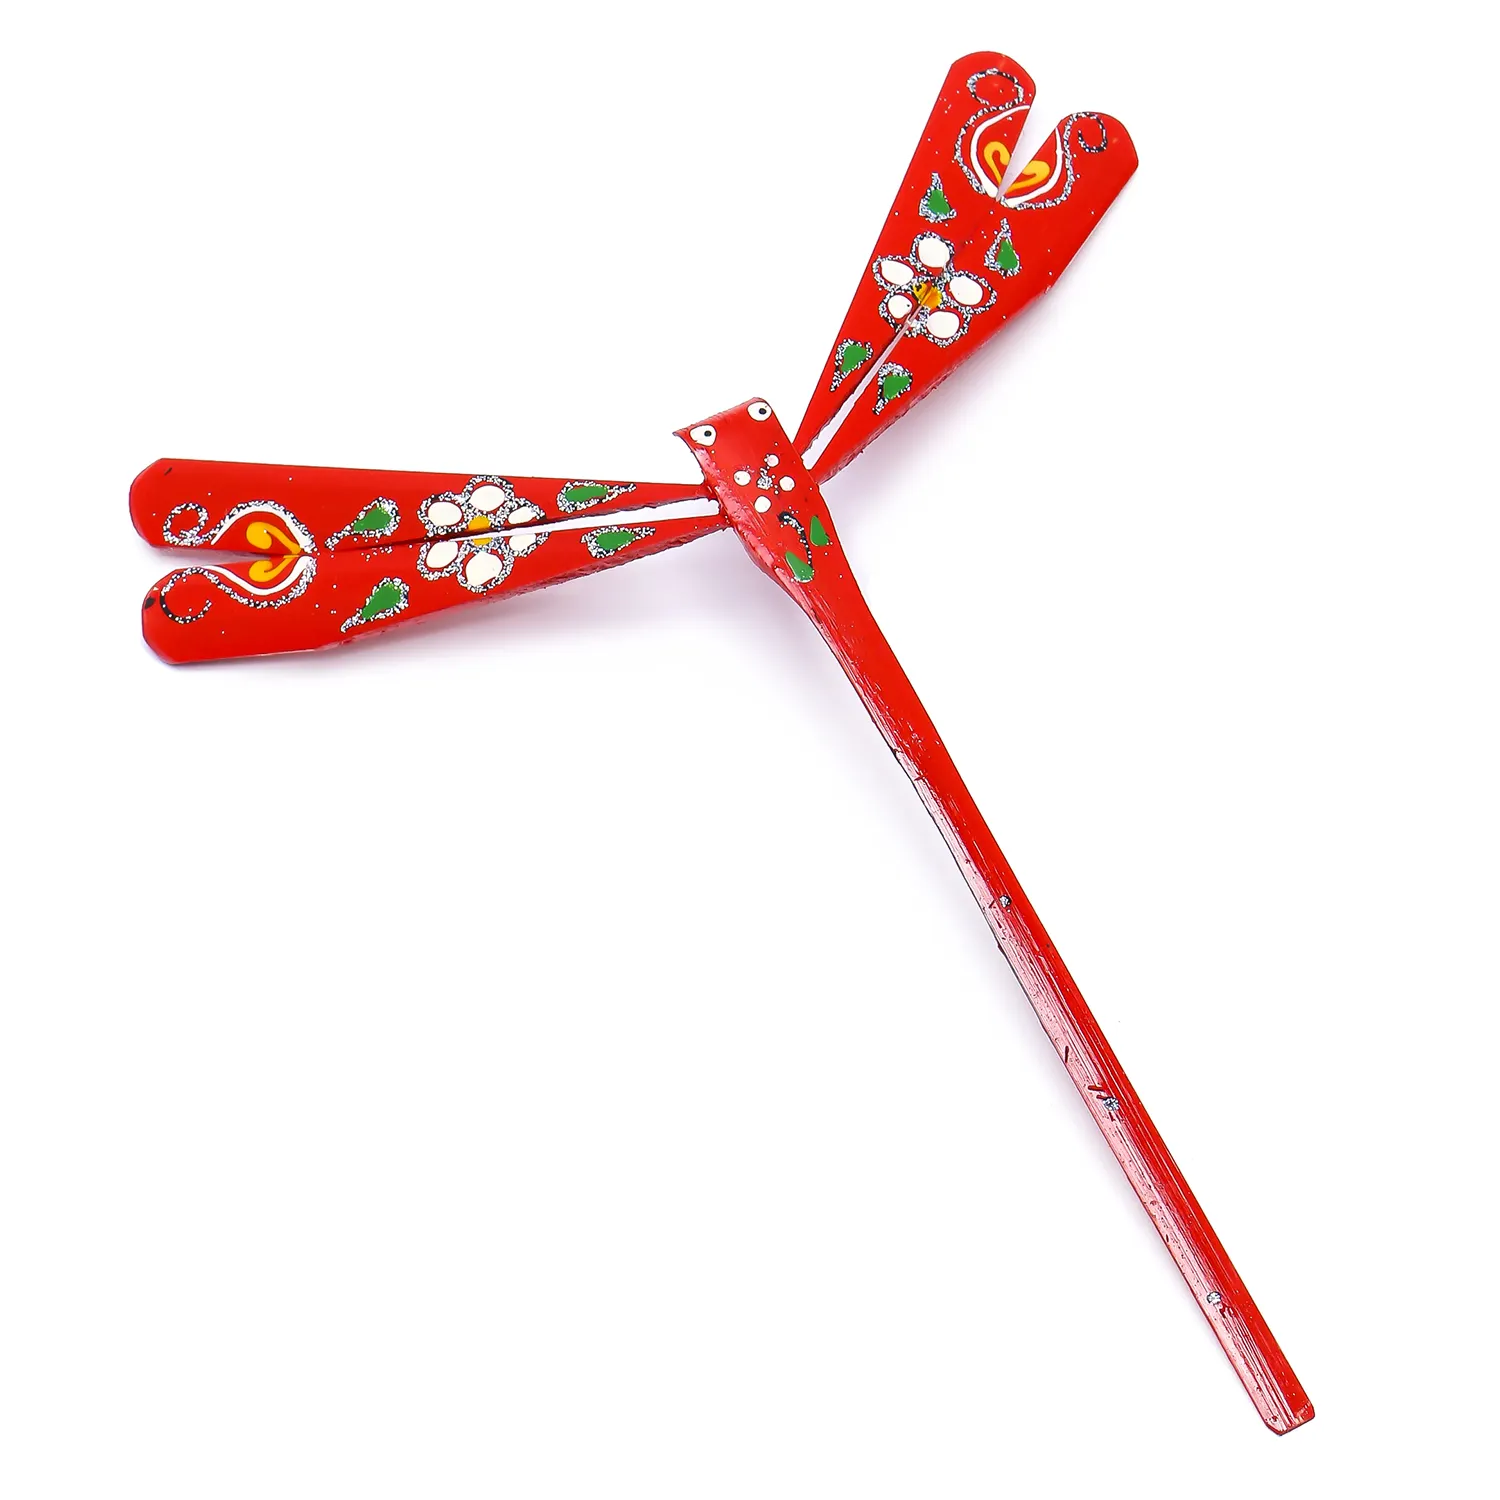 Le libellule di bambù equilibrate artigianali vengono utilizzate come decorazioni o regali tradizionali sig. Ra Sophie